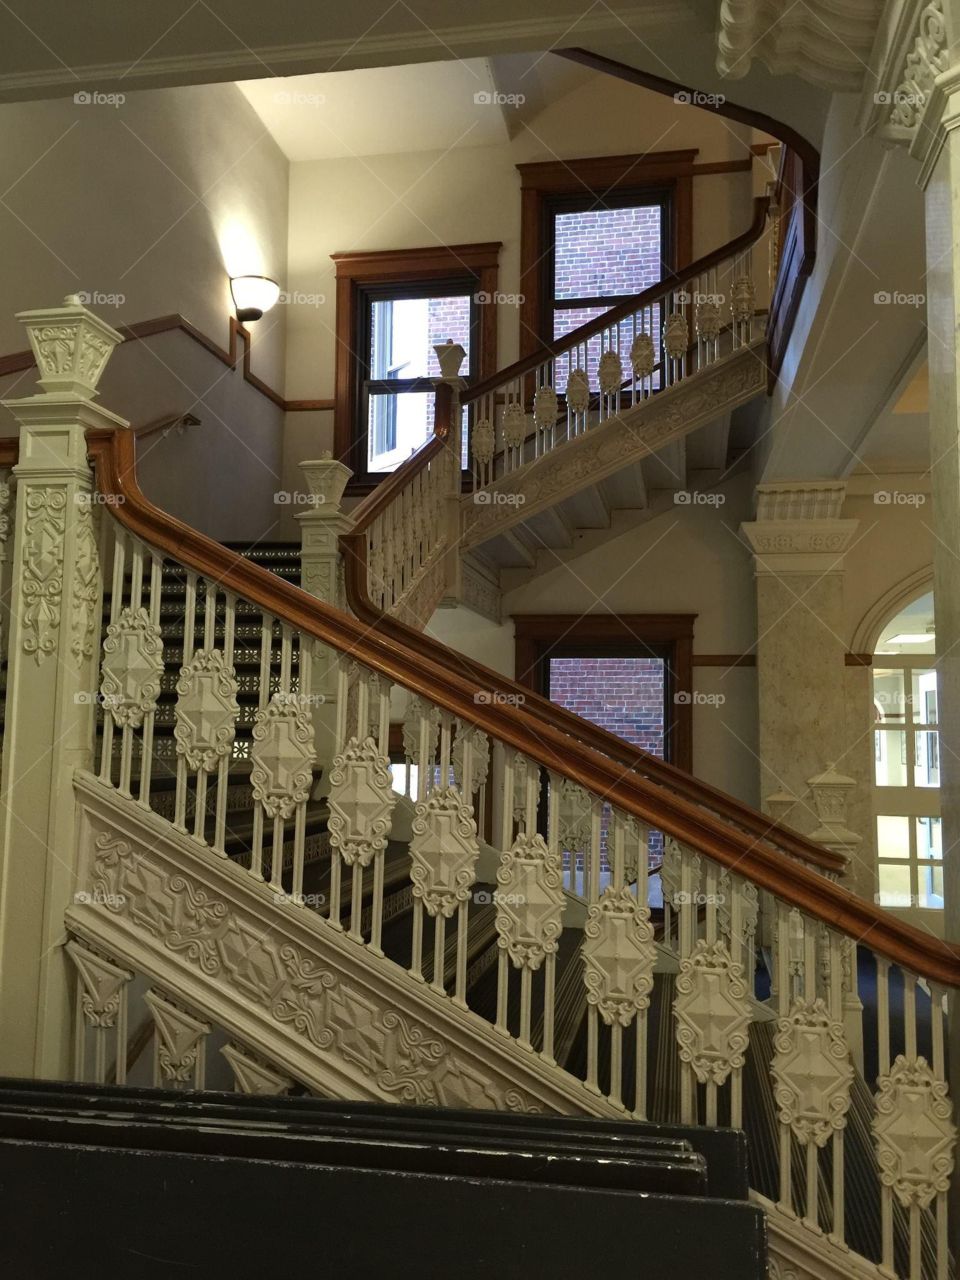 University Stairway 